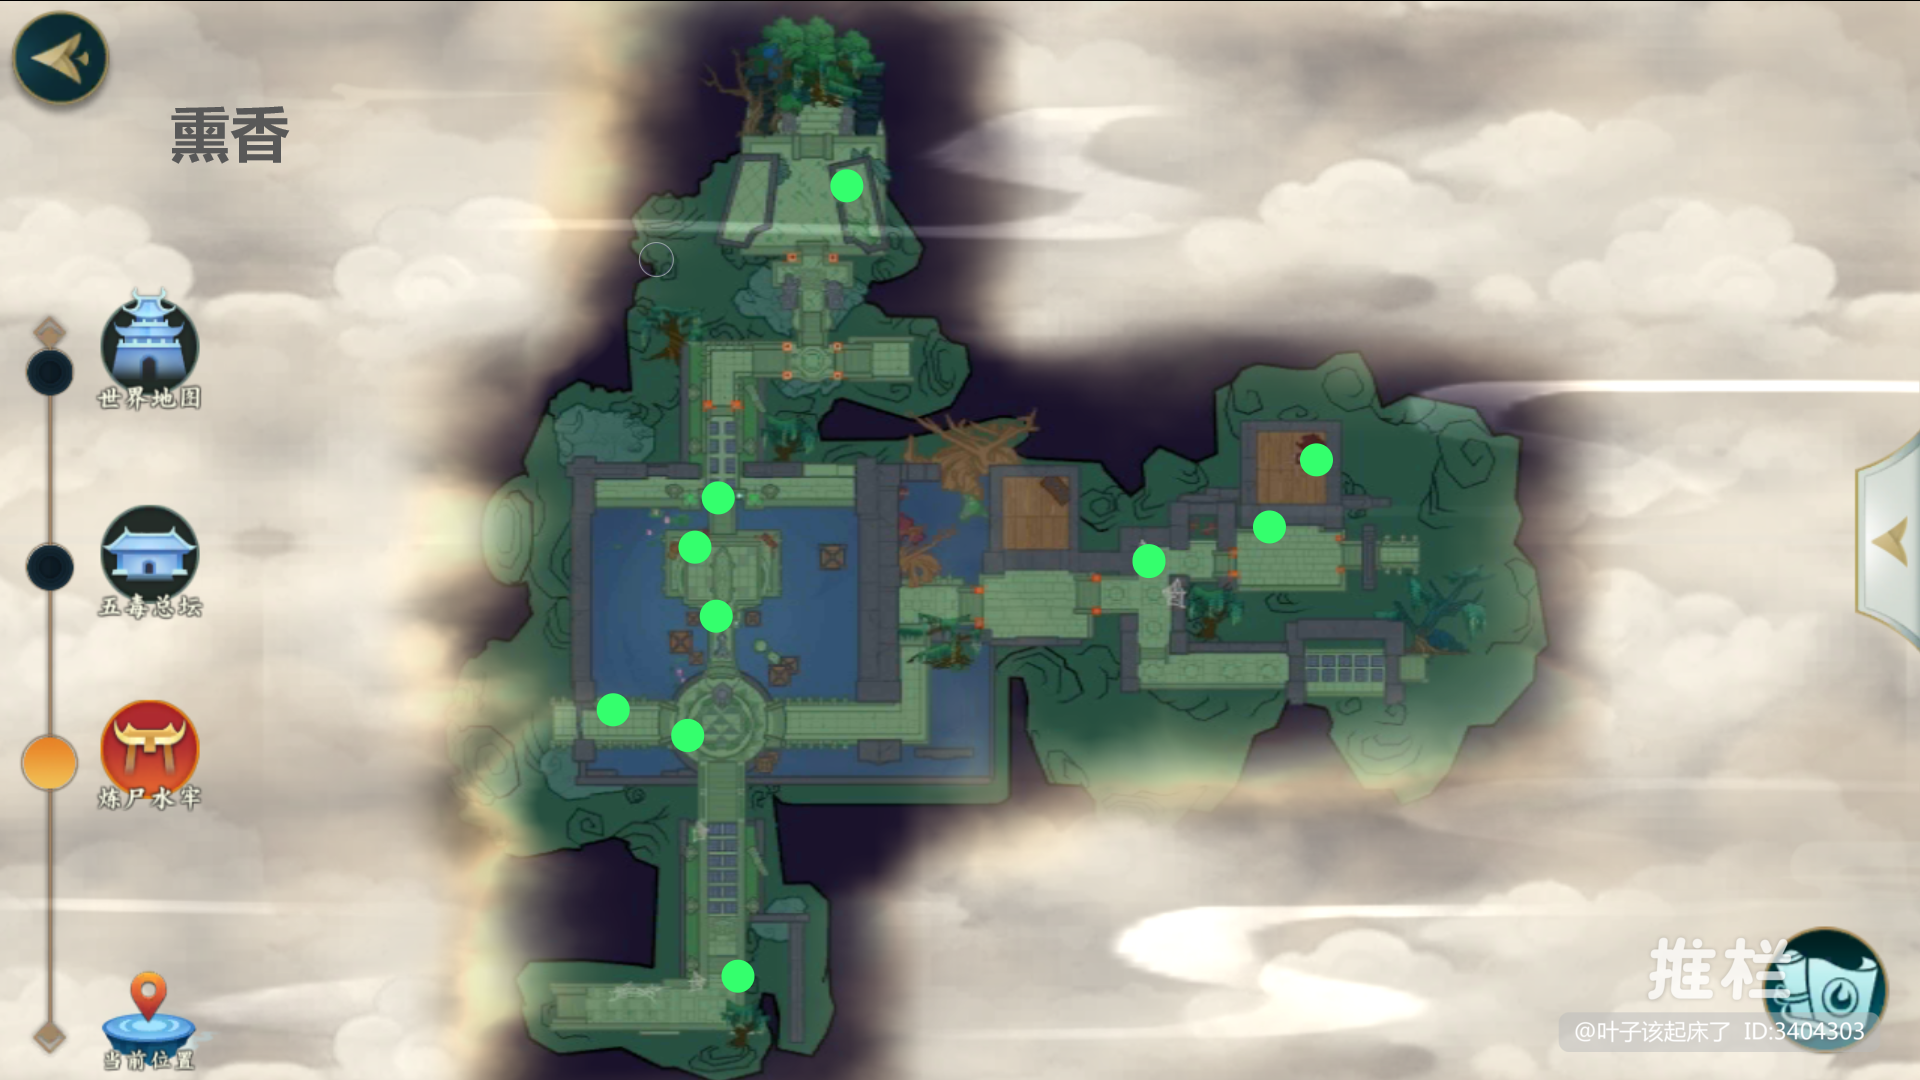 五毒地图各材料标点-动态-西山居游戏中心